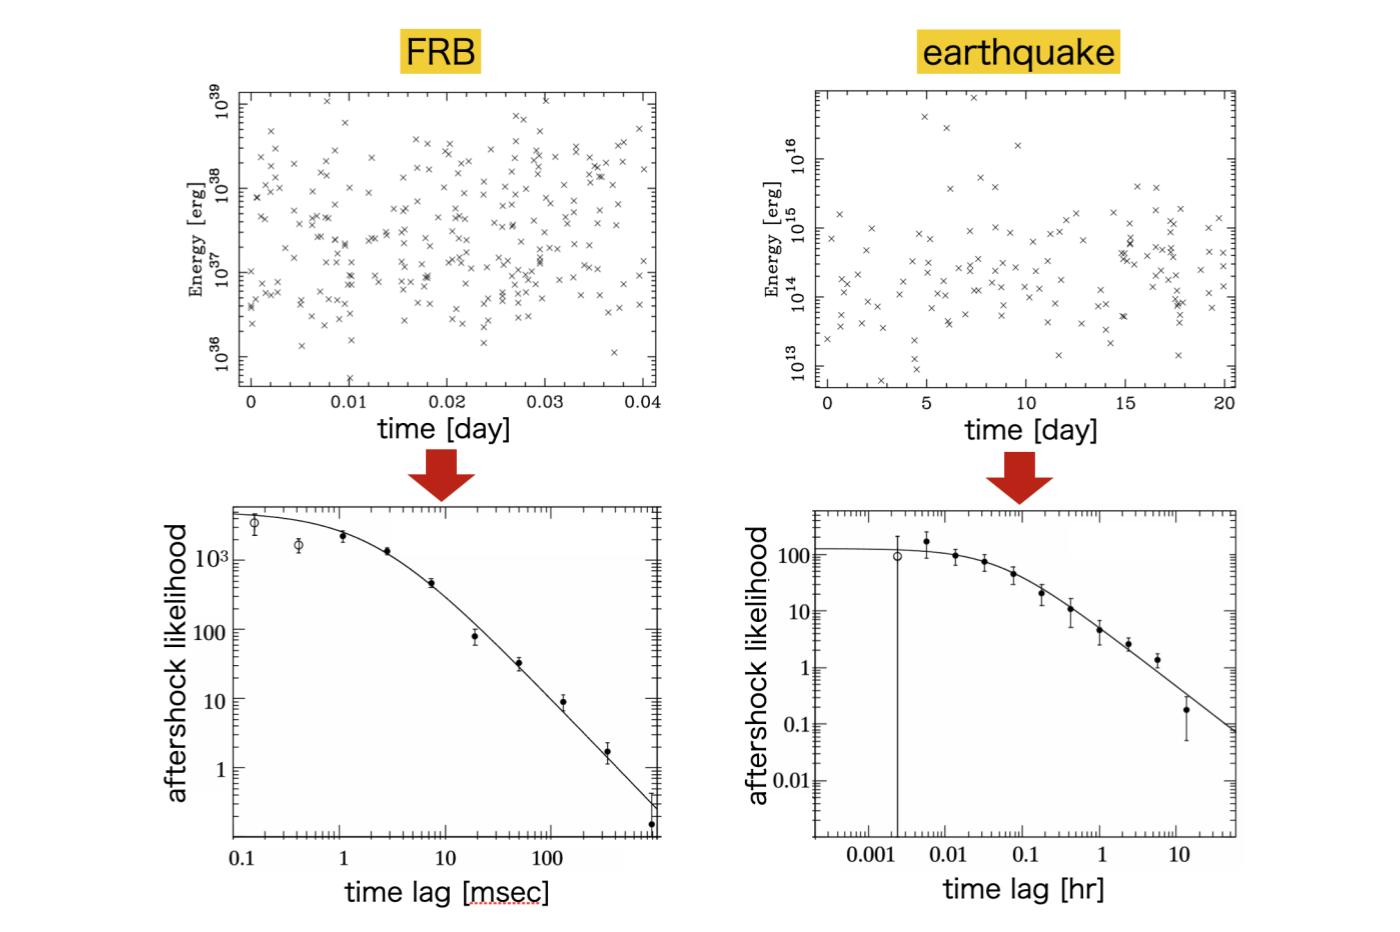  corrélations statistiques entre les FRB et les séismes